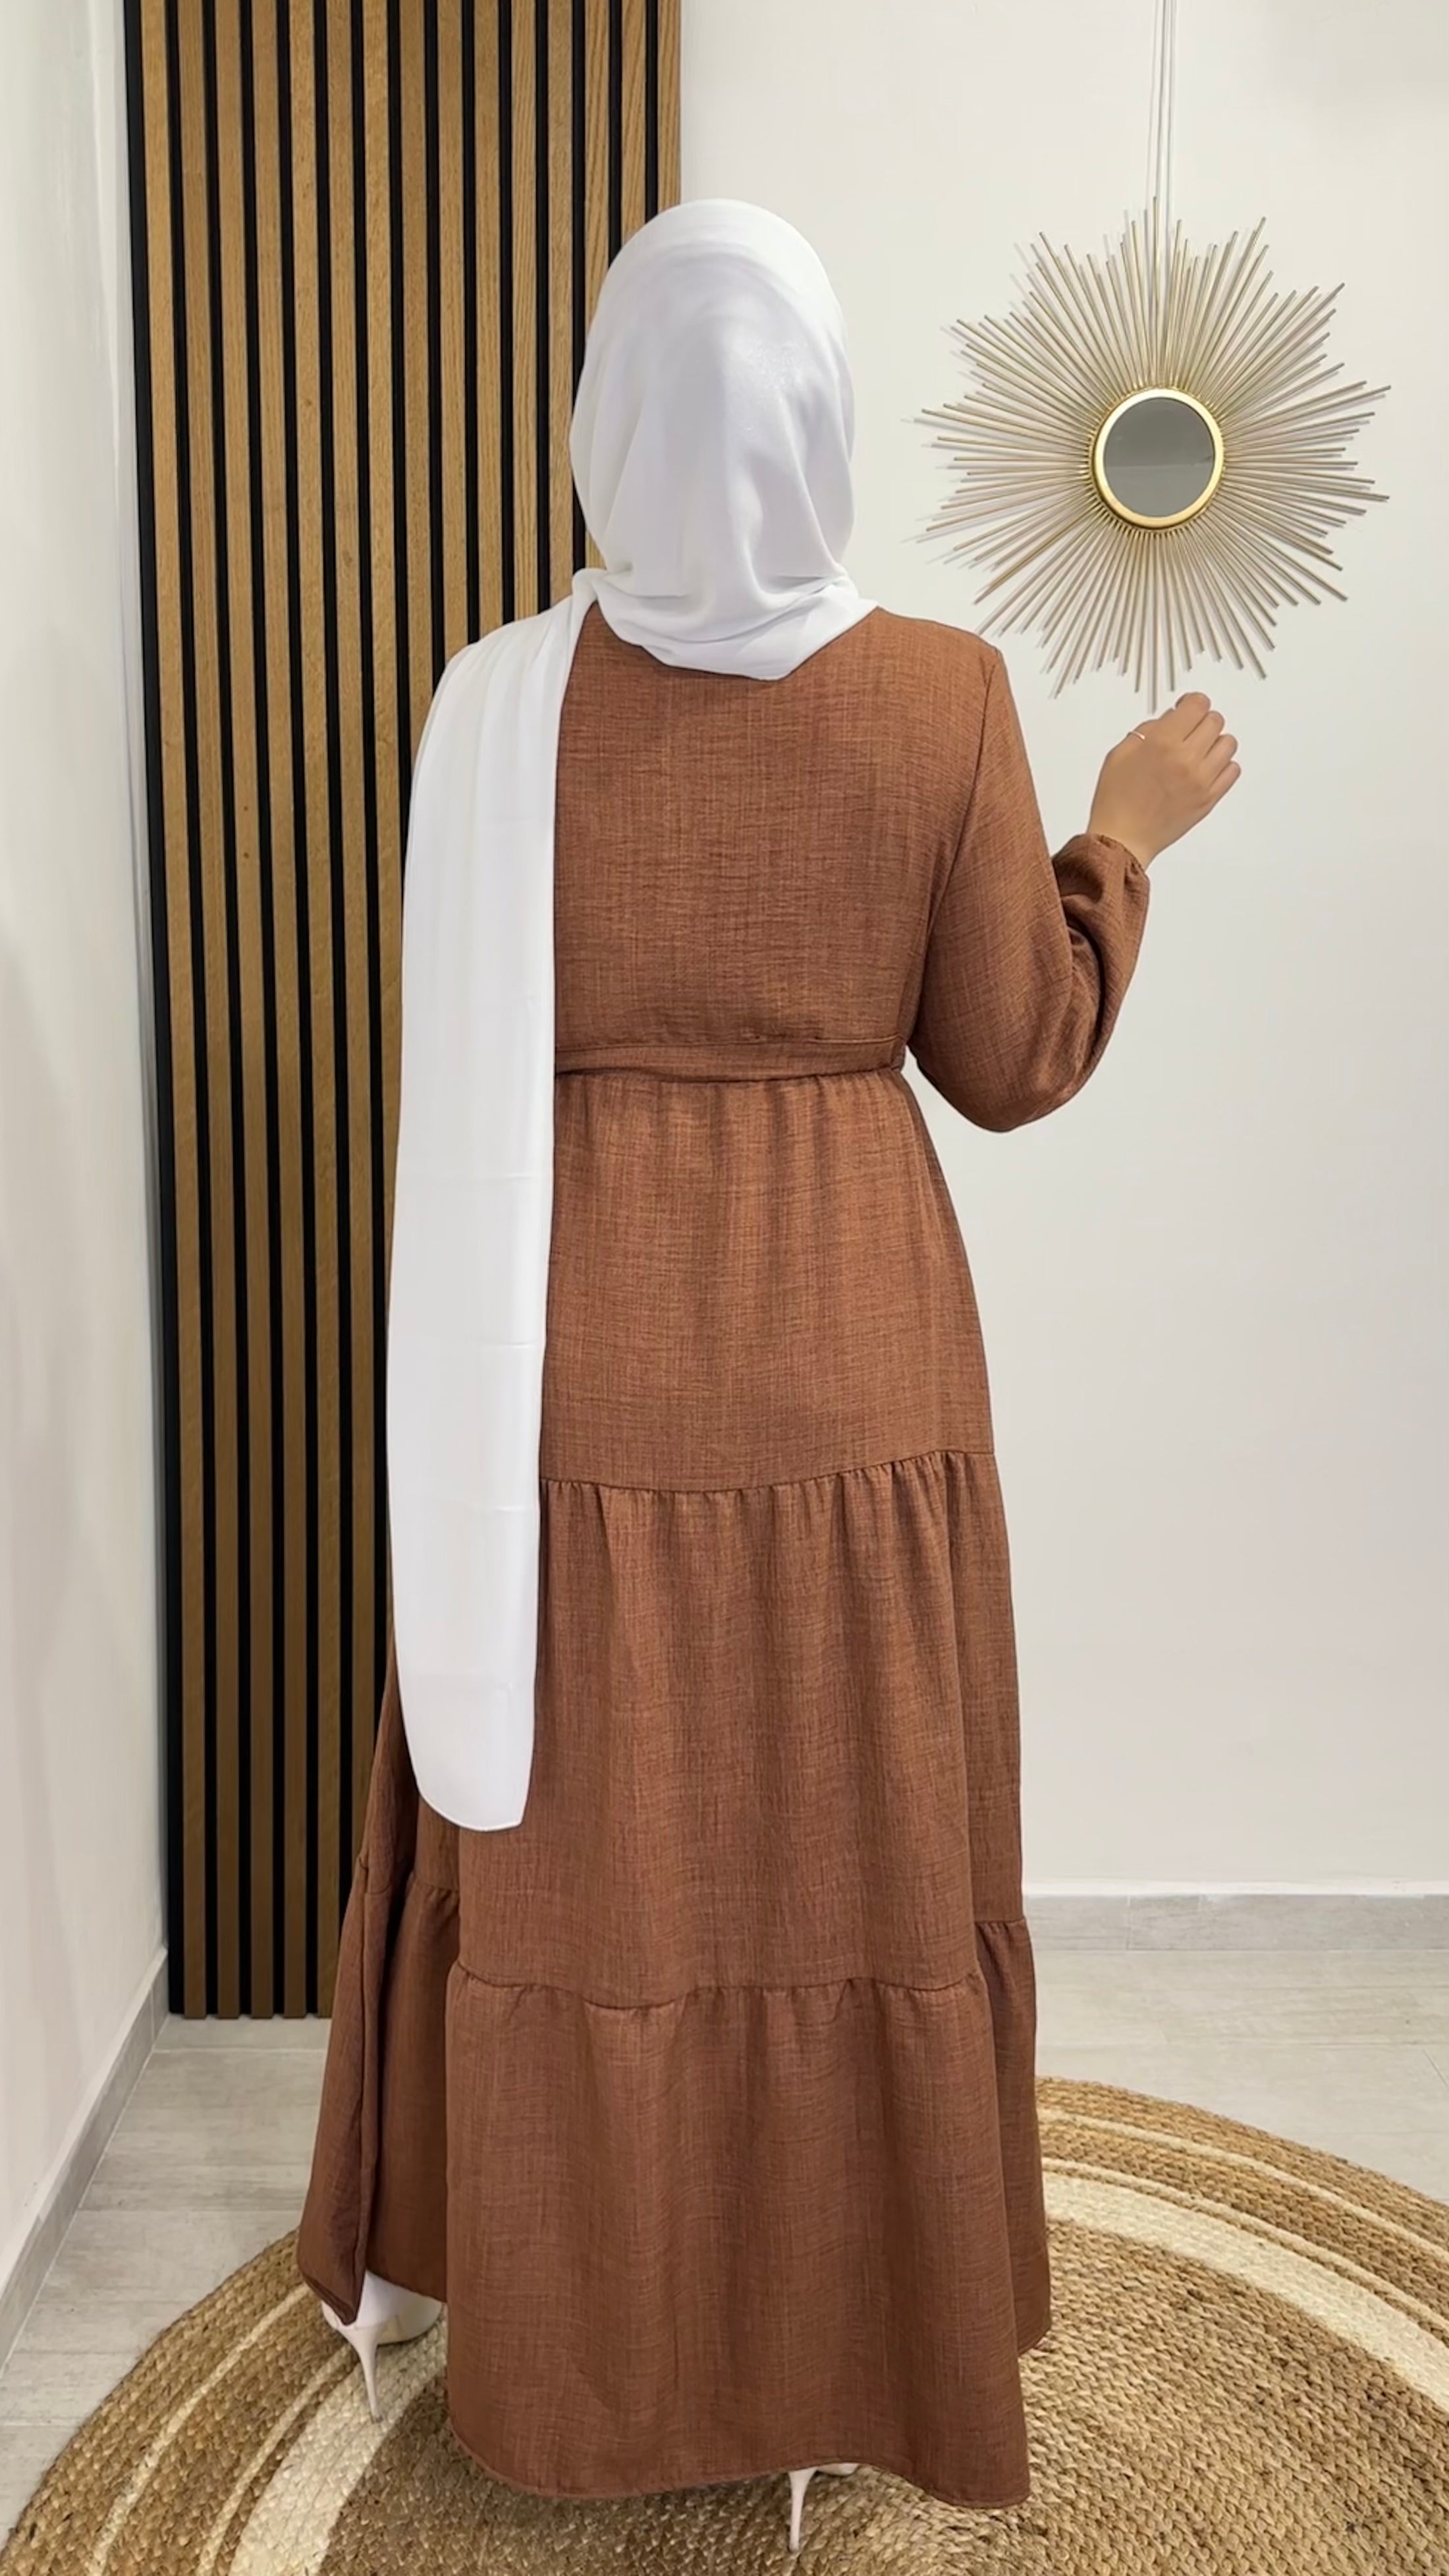 Honeyed Dress marrone - dress - vestito con taglio a campana  - polsi arricciati - laccio in vita , jersey bianco- tacchi bianchi - sorriso- donna musulmane 